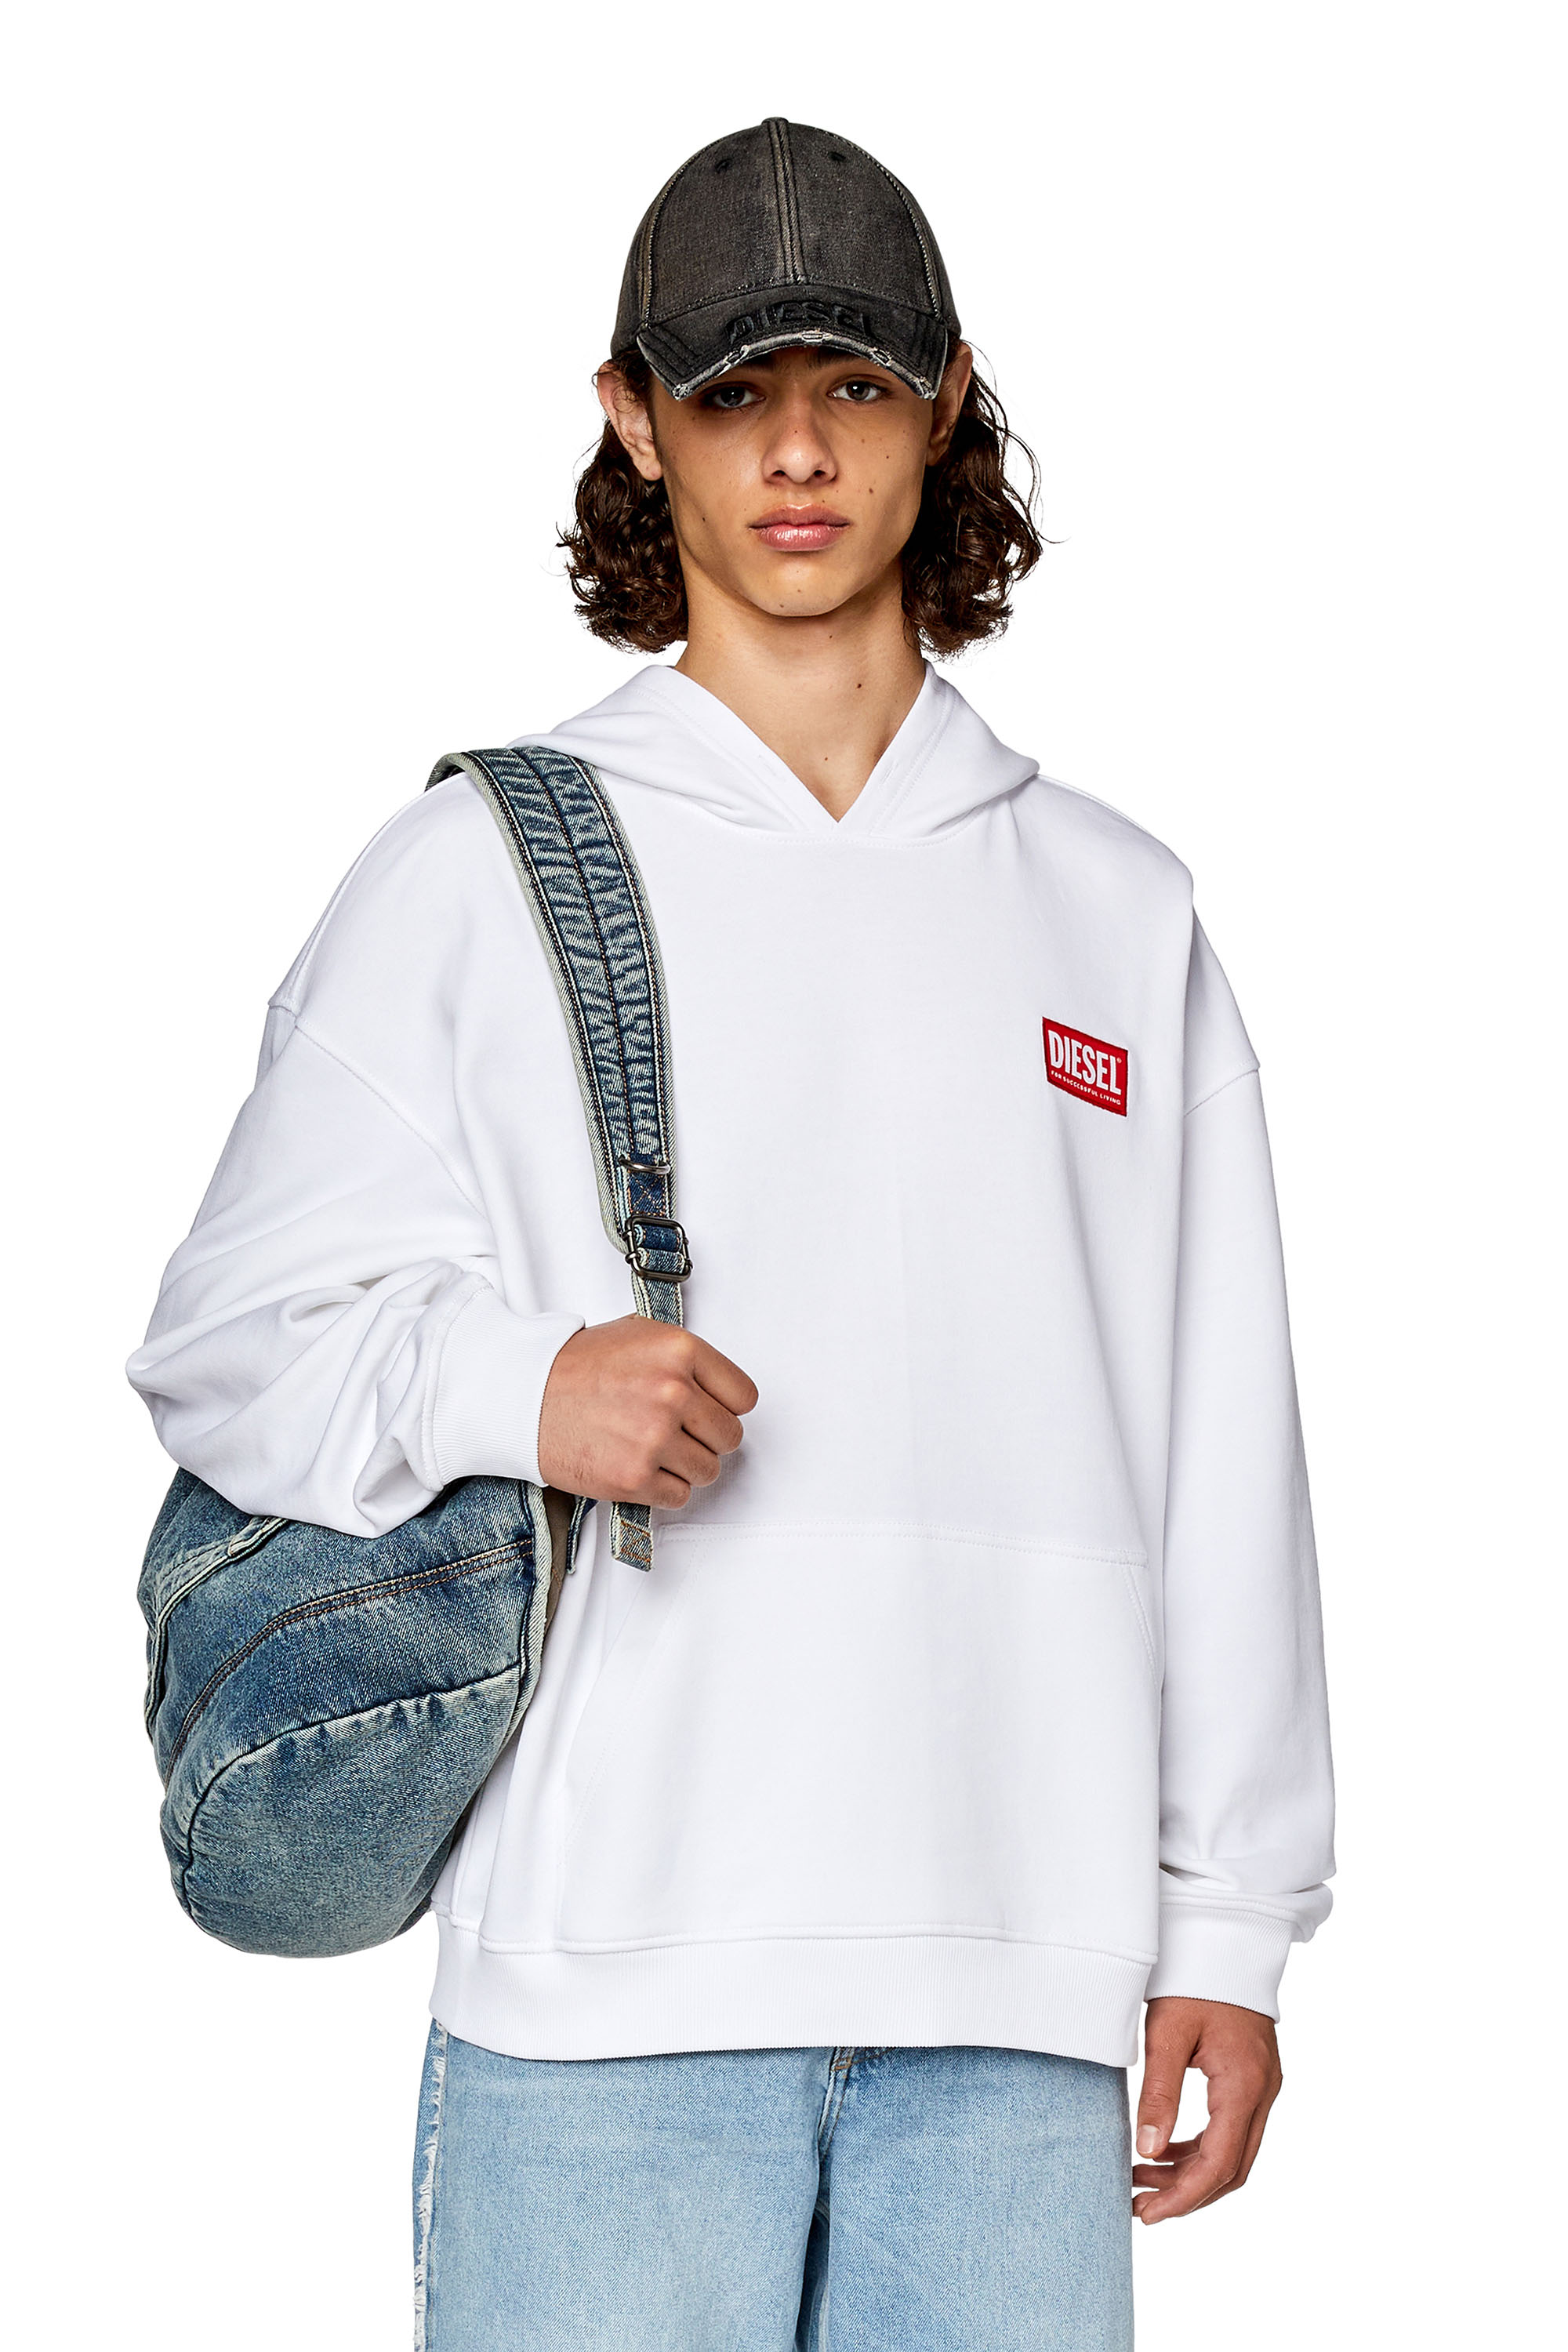 Diesel - Sweat-shirt à capuche oversize avec logo écusson - Pull Cotton - Homme - Blanc